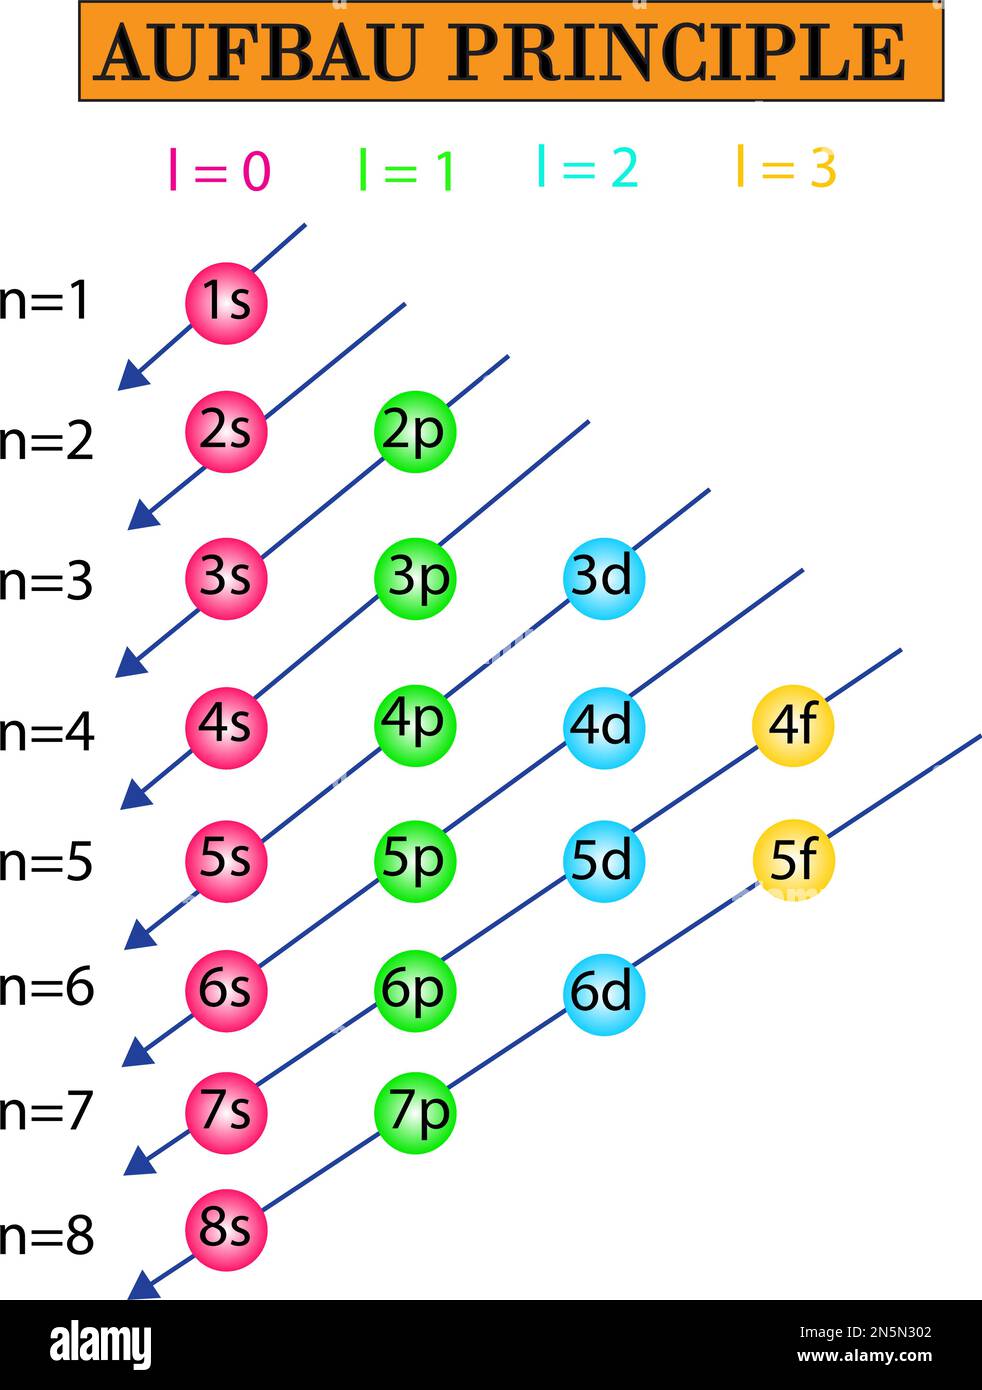 Le principe Aufbau peut être utilisé pour comprendre la localisation des électrons dans un atome et leurs niveaux d'énergie correspondants Illustration de Vecteur